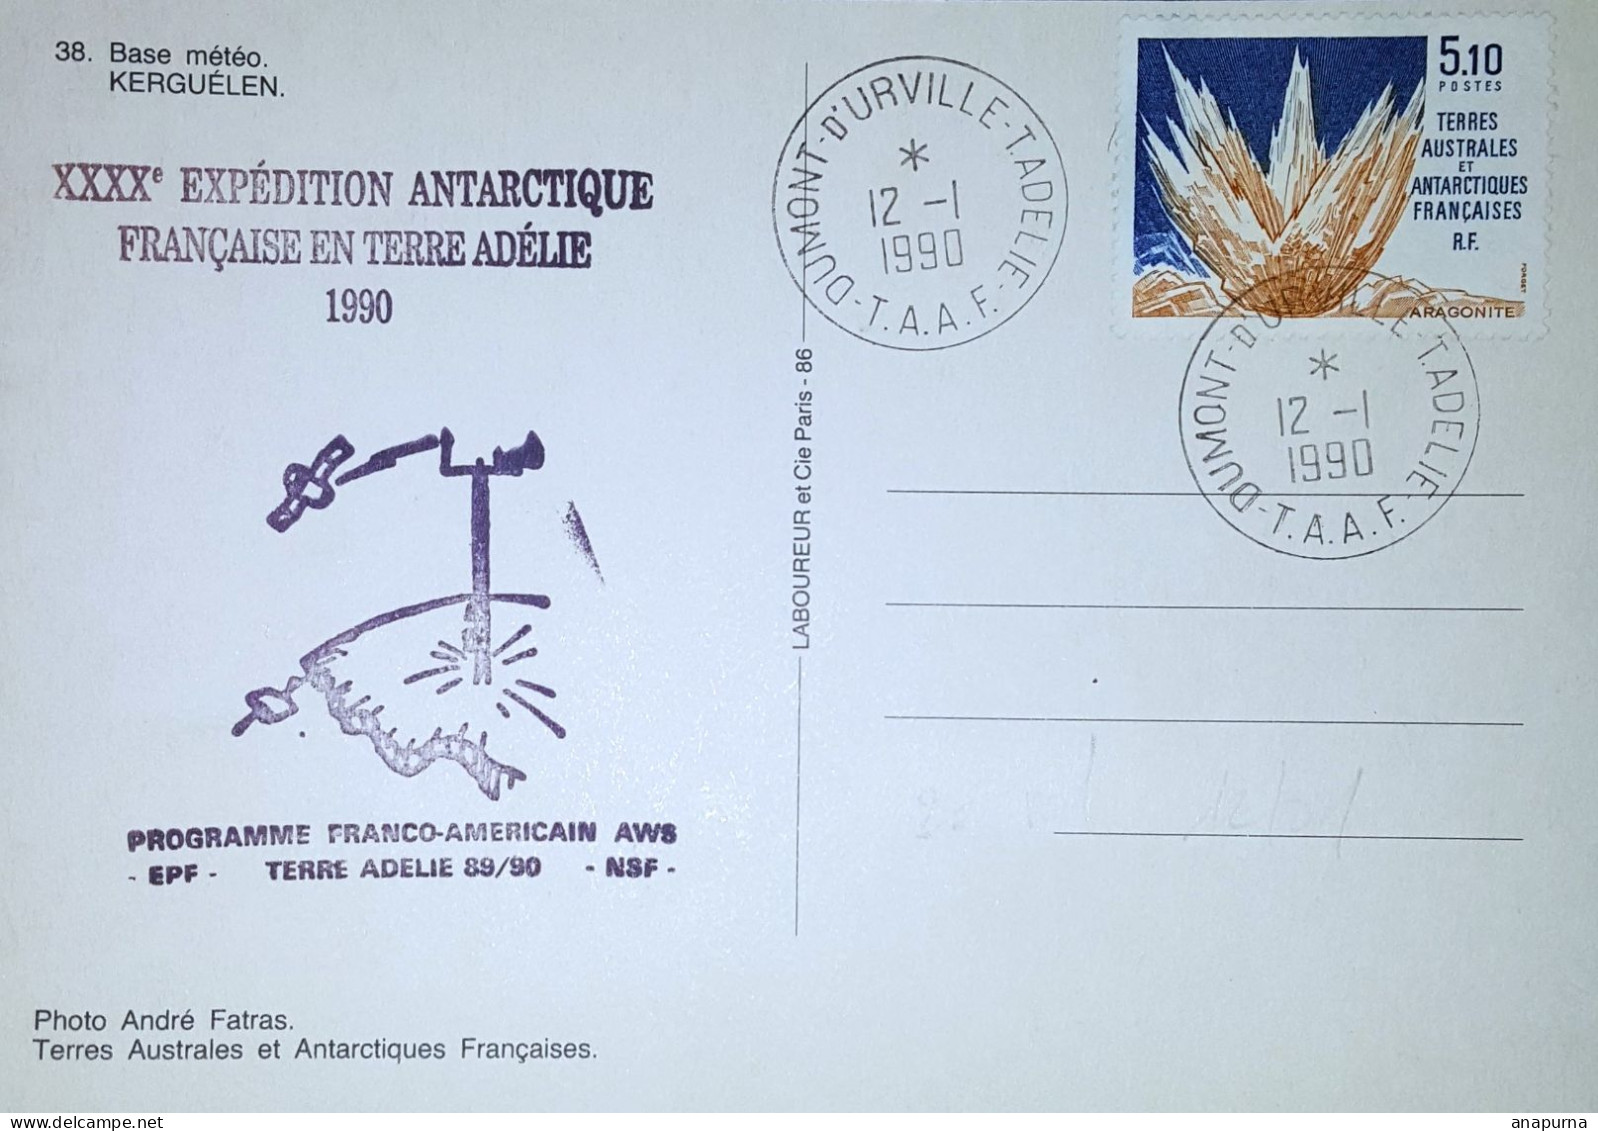 Carte Postale Postée Terre Adélie 12 1 1990 40eme Expéditions, Programme Franco-us AWS 89/90, EPF, Missions PEV - Lettres & Documents